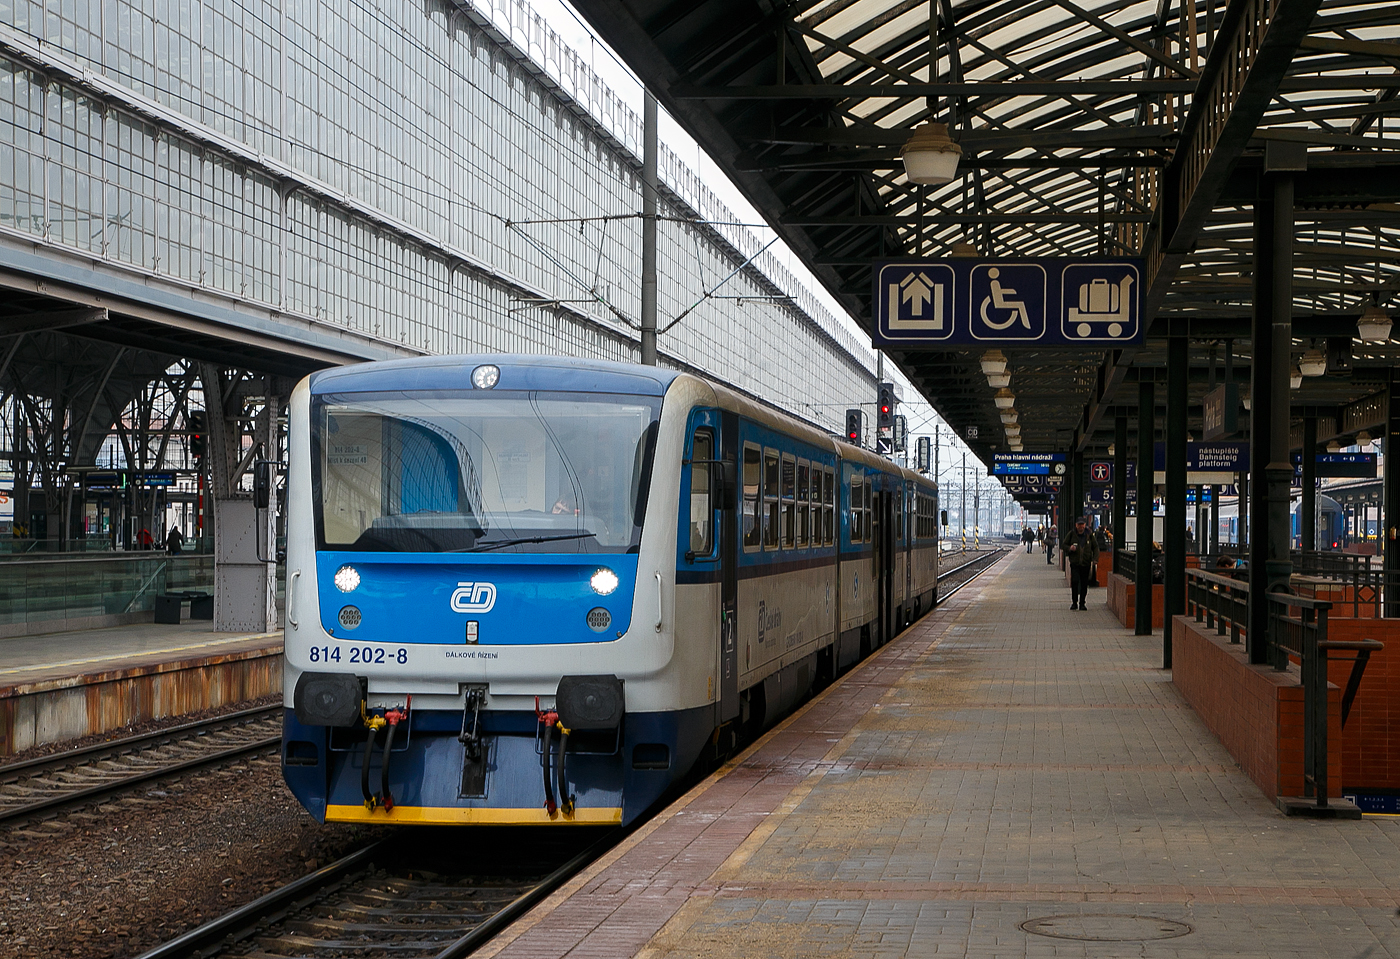 Der RegioNova „Trio“ 814 201-0 / 014 0xx / 814 202-9 steht am 23.11.2022 als Regionalzug im Hauptbahnhof Prag (Praha hlavn ndra) zur Abfahrt bereit.

Diese dreiteiligen Fahrzeuge der ČD-Baureihe 814.2/014/814.2 entstanden im Rahmen eines Rekonstruktionsprogrammes (2007 bis 2012) aus den Fahrzeugen der ČD-Baureihe 810 bzw. Beiwagen der Reihe 010. Von den ČD werden sie als „RegioNova“ vermarktet.Der Einsatz des Fahrzeuges ergibt vor allem Energieeinsparungen, eine hhere Traktionsgeschwindigkeit und dadurch eine Straffung der Fahrplne. 

Die Baureihe 814.2:
Eine Weiterentwicklung der Baureihe 814.0 ist die Baureihe 814.2. Eine Einheit besteht anstatt aus einem Motor- und einem Steuerwagen aus zwei Motorwagen (BR 814.2) und einem Mittelwagen (BR 014). Die dreiteiligen Zge bieten 127 Sitzpltze anstatt bei den zweiteiligen Wagen 76. Triebwagen der Baureihe 814.2 sind seit 2007 im Einsatz.

Technische Merkmale:
Wesentliche Vernderungen gegenber der Ursprungsbauart sind eine neue, leistungsfhigere Antriebsanlage mit dem Dieselmotor LIAZ ML 640 SE (TEDOM TD 242 RH TA25) und dem hydromechanischen Getriebe VOITH DIWA 864.3E, eine bequemere Innenausstattung mit behindertengerechter Toilette, bessere Arbeitsbedingungen fr den Lokfhrer, bessere Fahreigenschaften und geringere Umweltauswirkungen der Antriebsanlage. Die Regionova sind nach wie vor mit Schraubenkupplung ausgerstet und somit mit anderen Fahrzeugen freizgig kuppelbar.

Im Mittelwagen (BR 014), der zwischen den Radstzen einen Niederflurbereich auf etwa 50 % der Wagenlnge aufweist, befinden sich das Traglastenabteil, eine Auffahrrampe fr Rollsthle, die Toilette und 31 Sitzpltze. Der Einstieg liegt in diesem Bereich in Wagenmitte. Der Triebwagen, in normaler Bodenhhe aufgebaut, besitzt Fahrgastabteile mit 48 Sitzpltzen. Die Antriebsanlage liegt wie bei der Ursprungsbauart unter dem Wagenboden, auch die Lage der Einstiege wurde bei den Triebwagen nicht verndert.

Beschreibung von koda:
Die Zuggarnituren entstehen durch eine Rekonstruktionen und Modernisierung der ursprnglichen Wagen, die in den Jahren 1973-1983 hergestellt wurden. Der Hauptbeitrag der Rekonstruktion ist neben der Erhhung der Qualitt des Reisens auf den Regionalstrecken auch die Reduzierung der Kosten fr den Betrieb und die Wartung.

Die modernisierten Einheiten haben einen geringeren Verbrauch und in den Endstationen mssen sie nicht umgespannt werden. Der Zug Regionova  Trio  besteht aus zwei Triebwagen und einem Niederflur-Zwischenwagen, der die Befrderung von Personen mit eingeschrnkter Mobilitt und von Eltern mit Kinderwagen erleichtert.. In den Zuggarnituren ist gengend Platz auch fr greres Gepck. Eine komplette Modernisierung machte auch der Zugfhrerraum durch.

TECHNISCHE DATEN Regionova „Trio“:
Hersteller (Umbau): Pars Nova in umperk (gehrt zu koda)
Spurweite: 1.435 mm (Normalspur)
Achsformel: 1'A' + 1'1' + A'1'
Lnge ber Puffer: 42.410 mm
Wagenkastenbreite: 3.073 mm
Hhe: 3.420 mm
Leergewicht: 62,3 t
Radsatzfahrmasse: 9,75 t
Hchstgeschwindigkeit: 80 km/h
Installierte Leistung: 242 kW (bei 1.950 U/min)
Anfahrzugkraft: 54 kN
Motorentyp: 2x TEDOM TD 242 RH TA25 (LIAZ ML 640 SE)
Getriebe: 2 x Voith Diwa 864.3E
Leistungsbertragung: hydromechanisch
Sitzpltze: 127
Fubodenhhe: 570 mm (Niederflurteil)
Kleinster befahrbarer Gleisbogen: R 120 m
Bremse: DK-P
